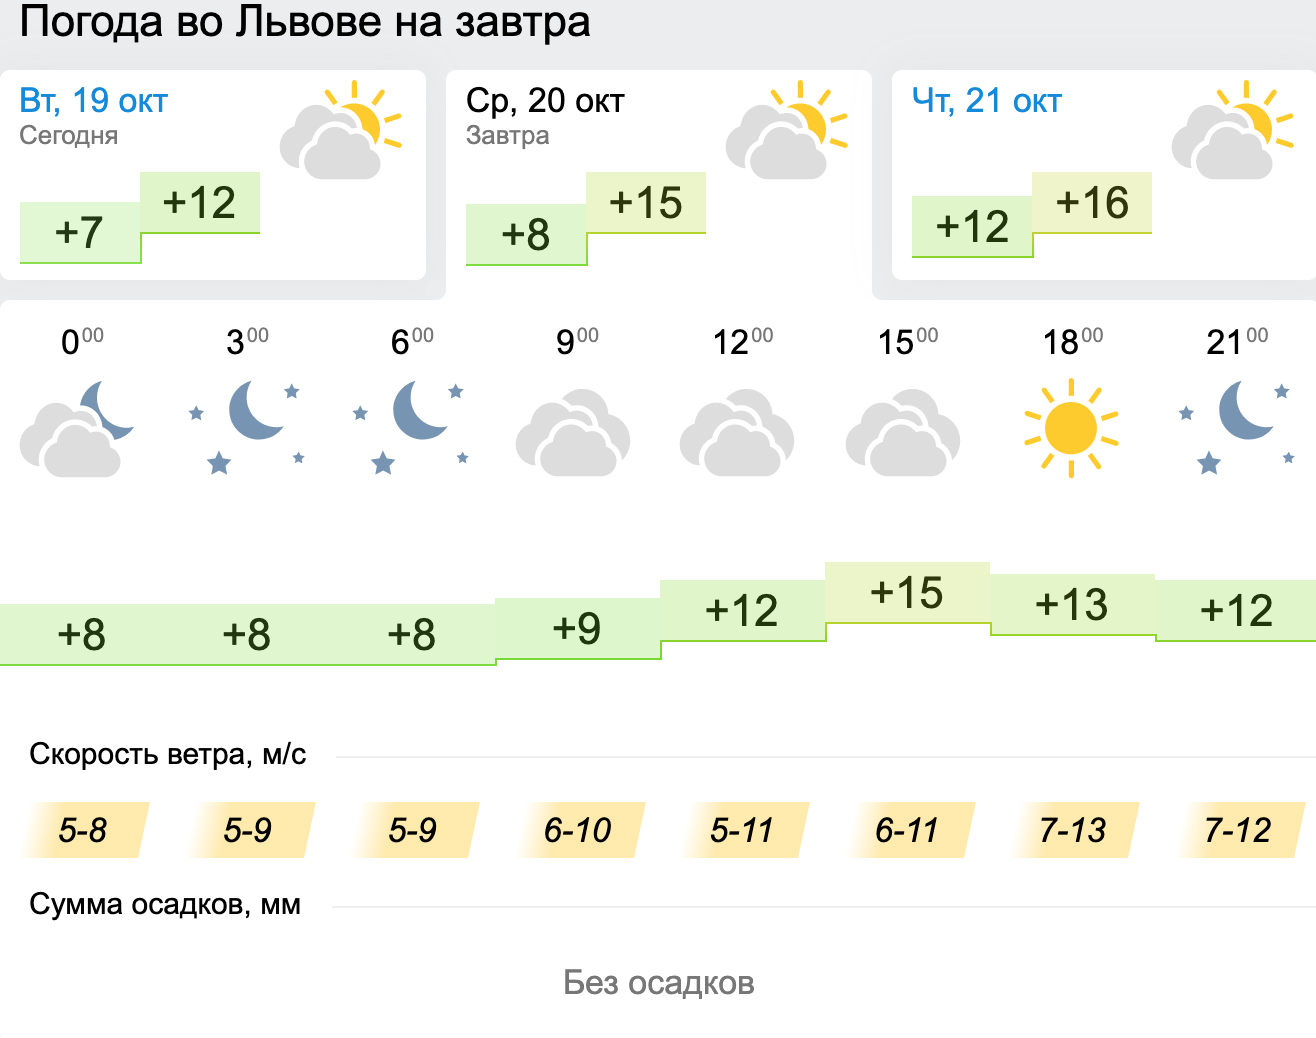 Погода во Львове. Инфографика: Gismeteo